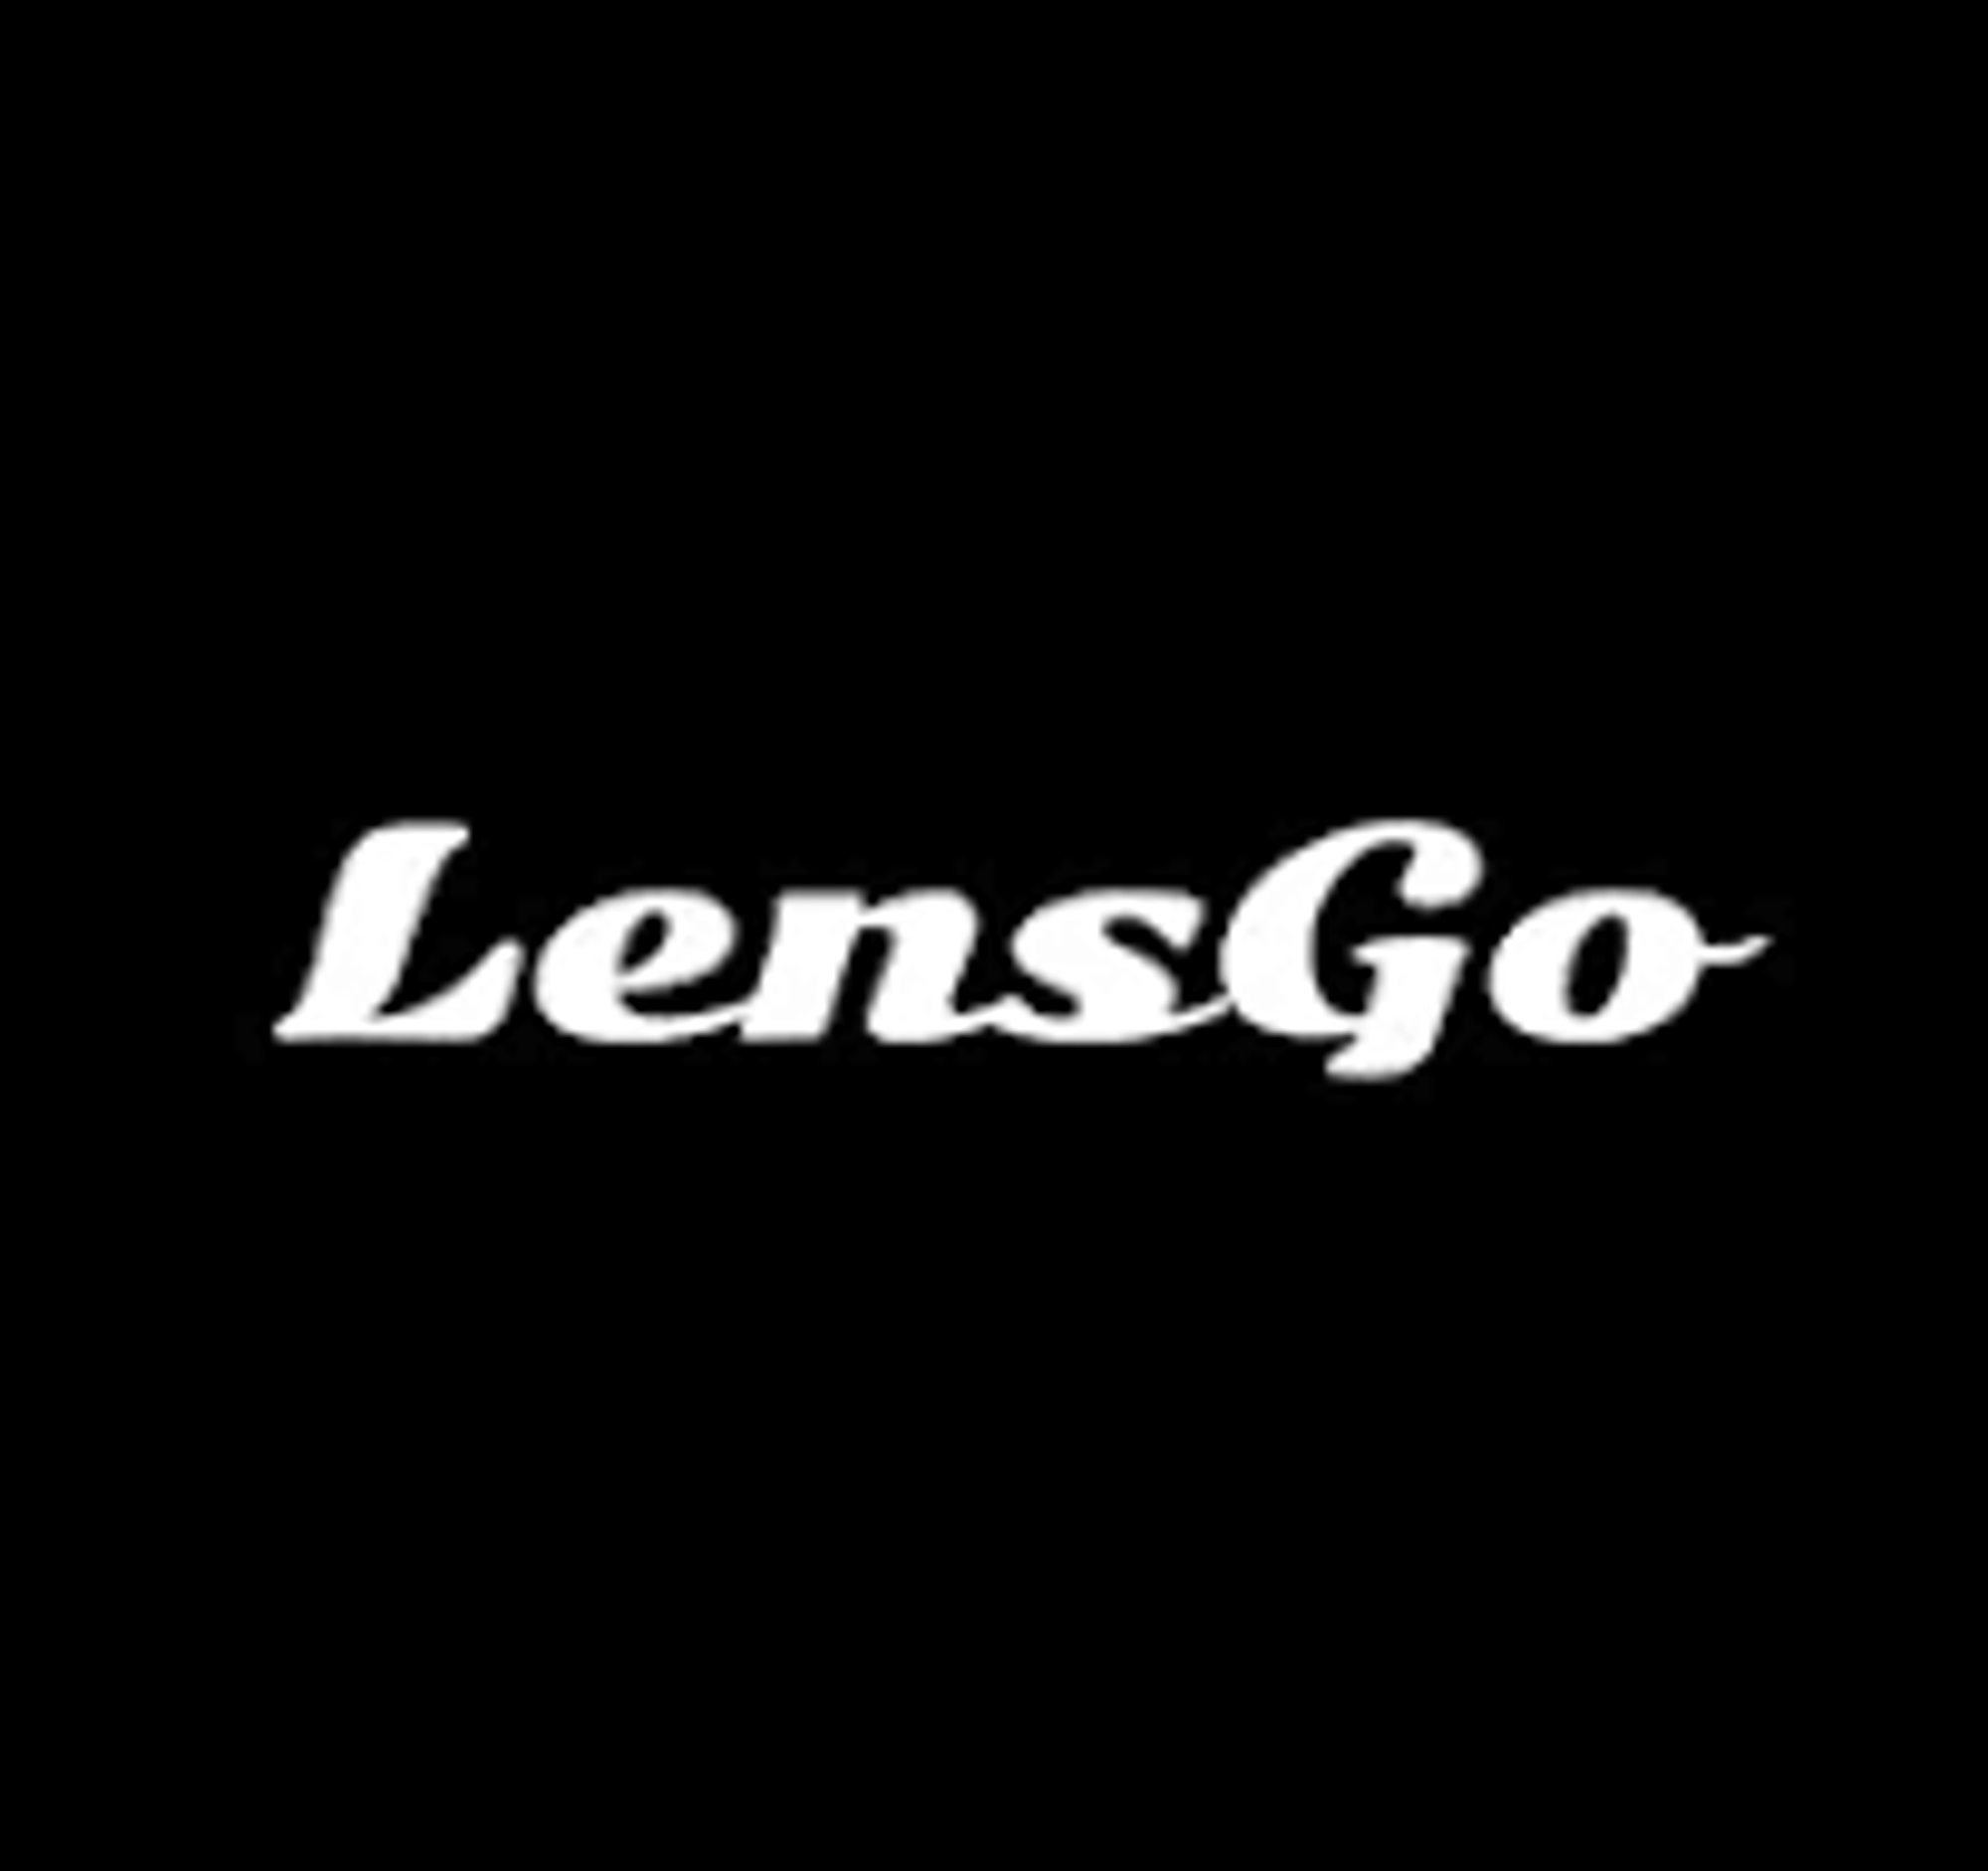 Lensgo logo